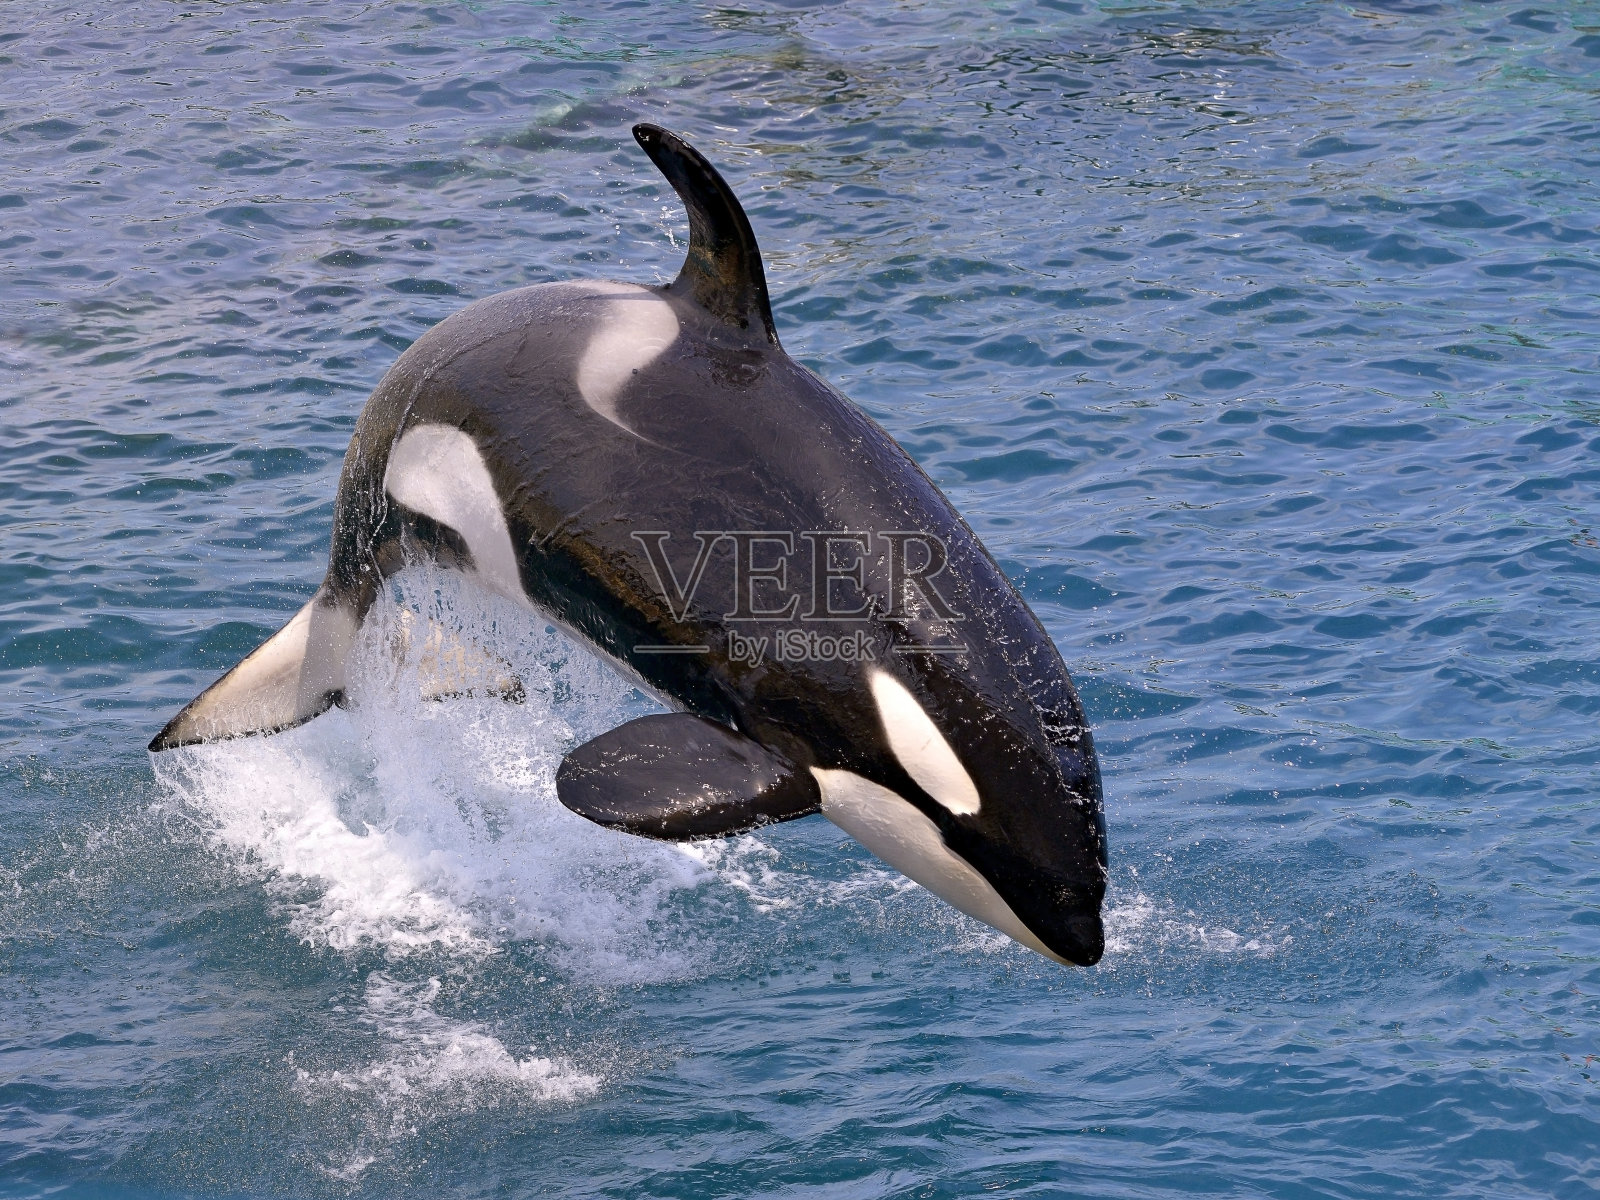 虎鲸跳出水面照片摄影图片